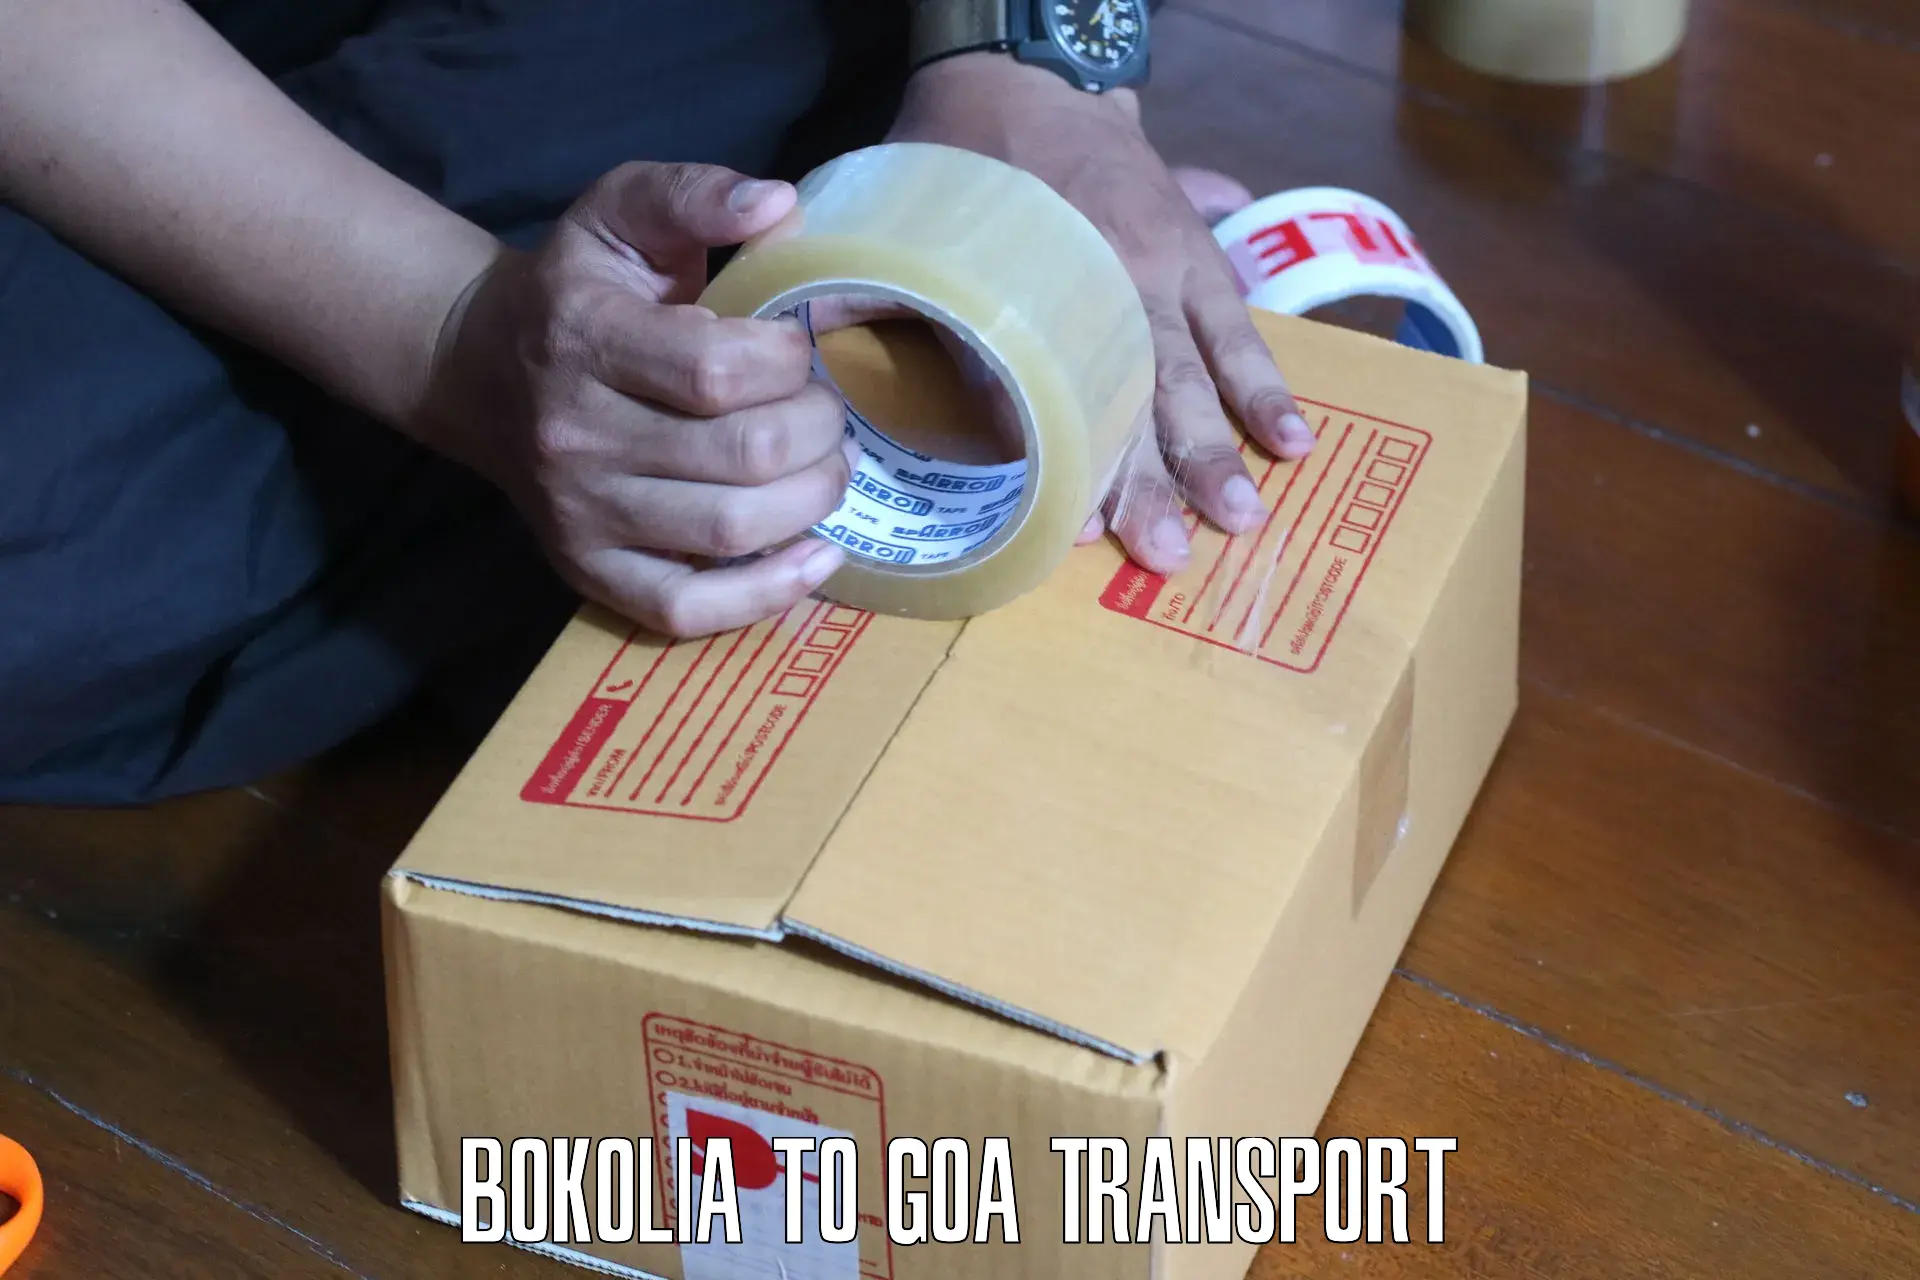 Luggage transport services Bokolia to South Goa